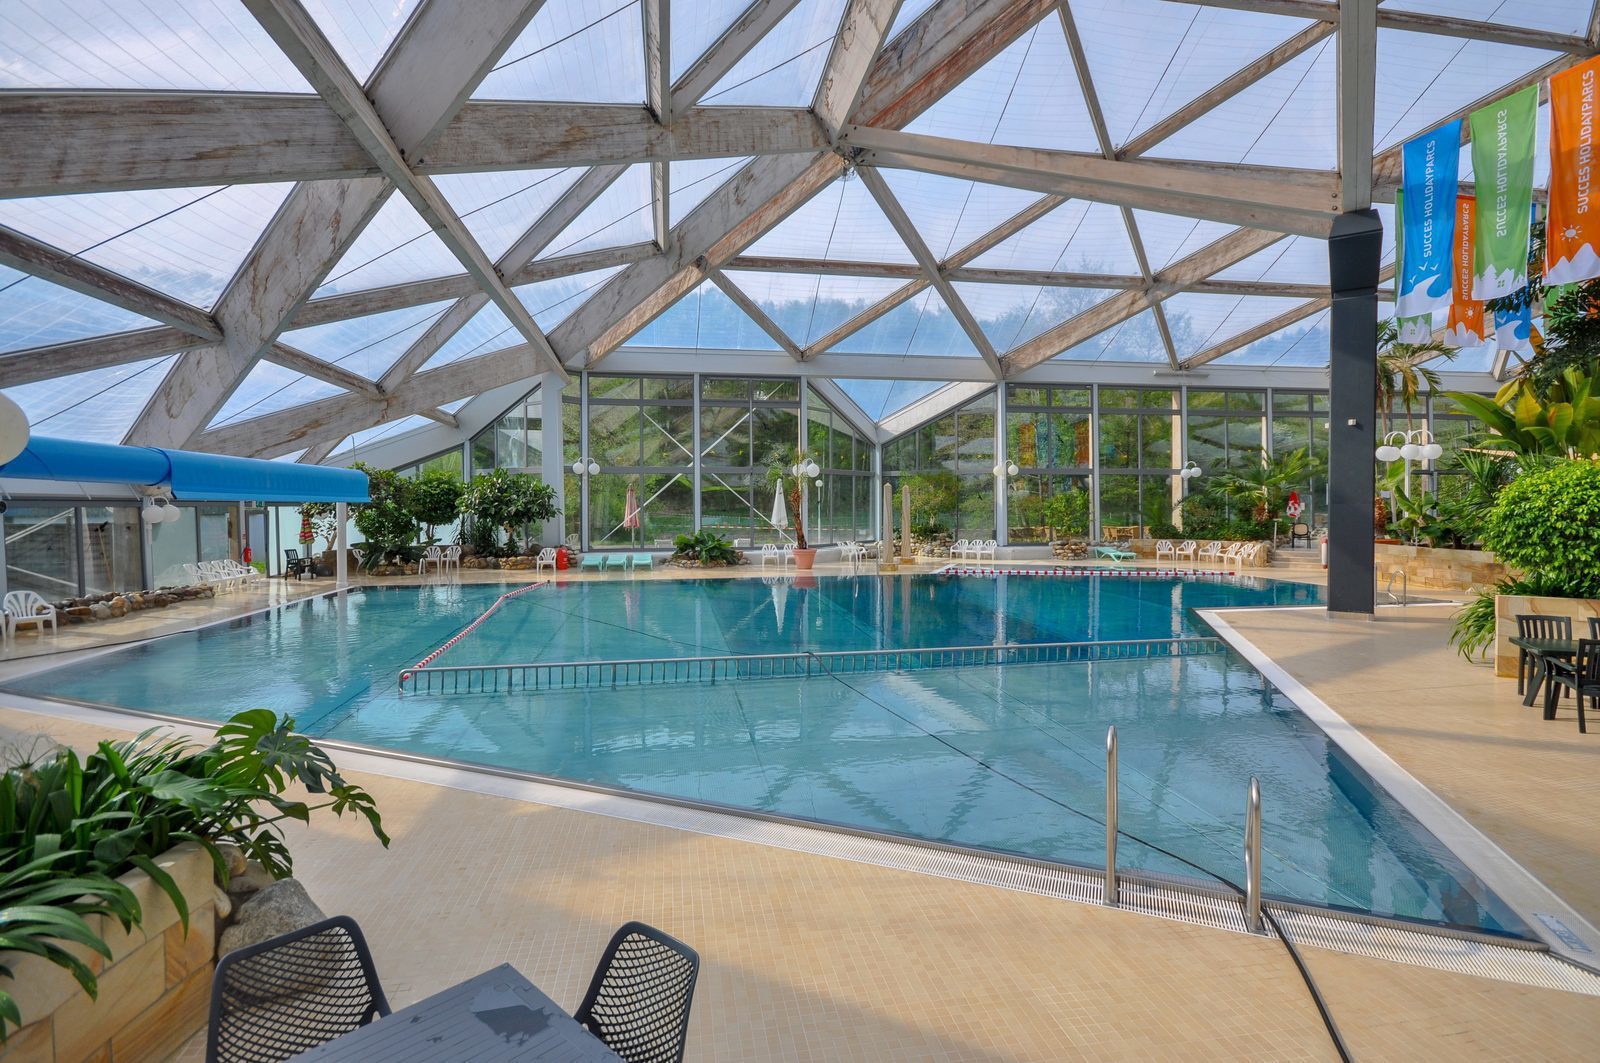 Ferienpark in Deutschland mit Schwimmbad